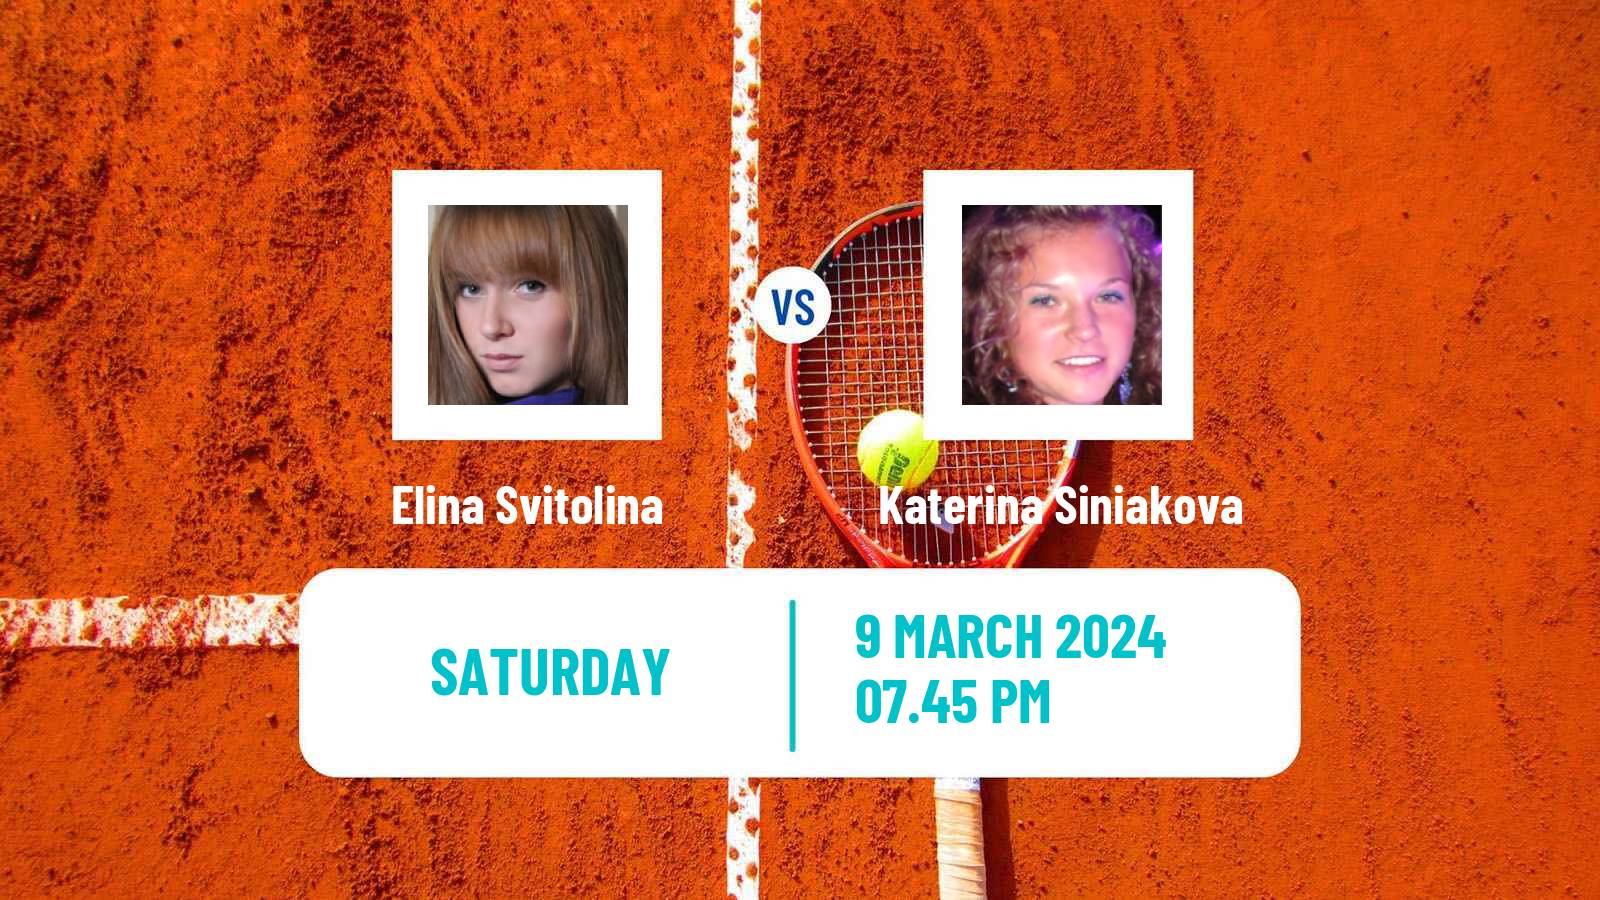 Tennis WTA Indian Wells Elina Svitolina - Katerina Siniakova